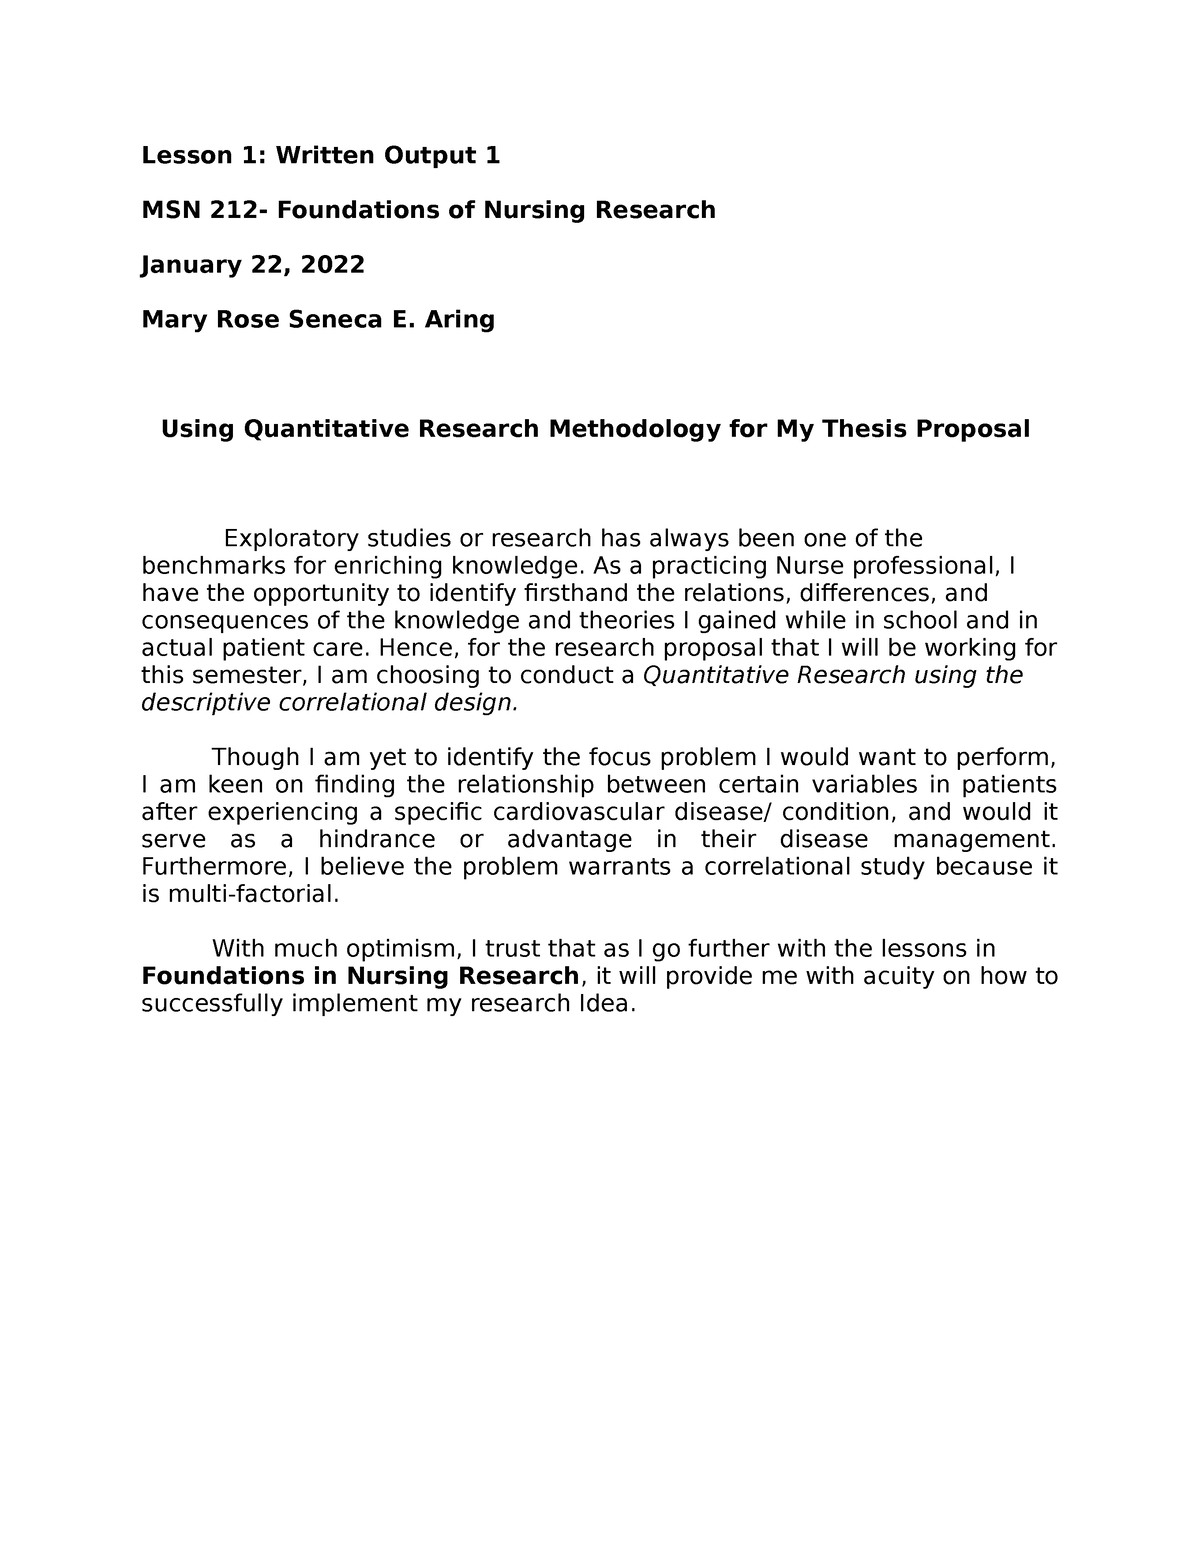 nursing quantitative research examples